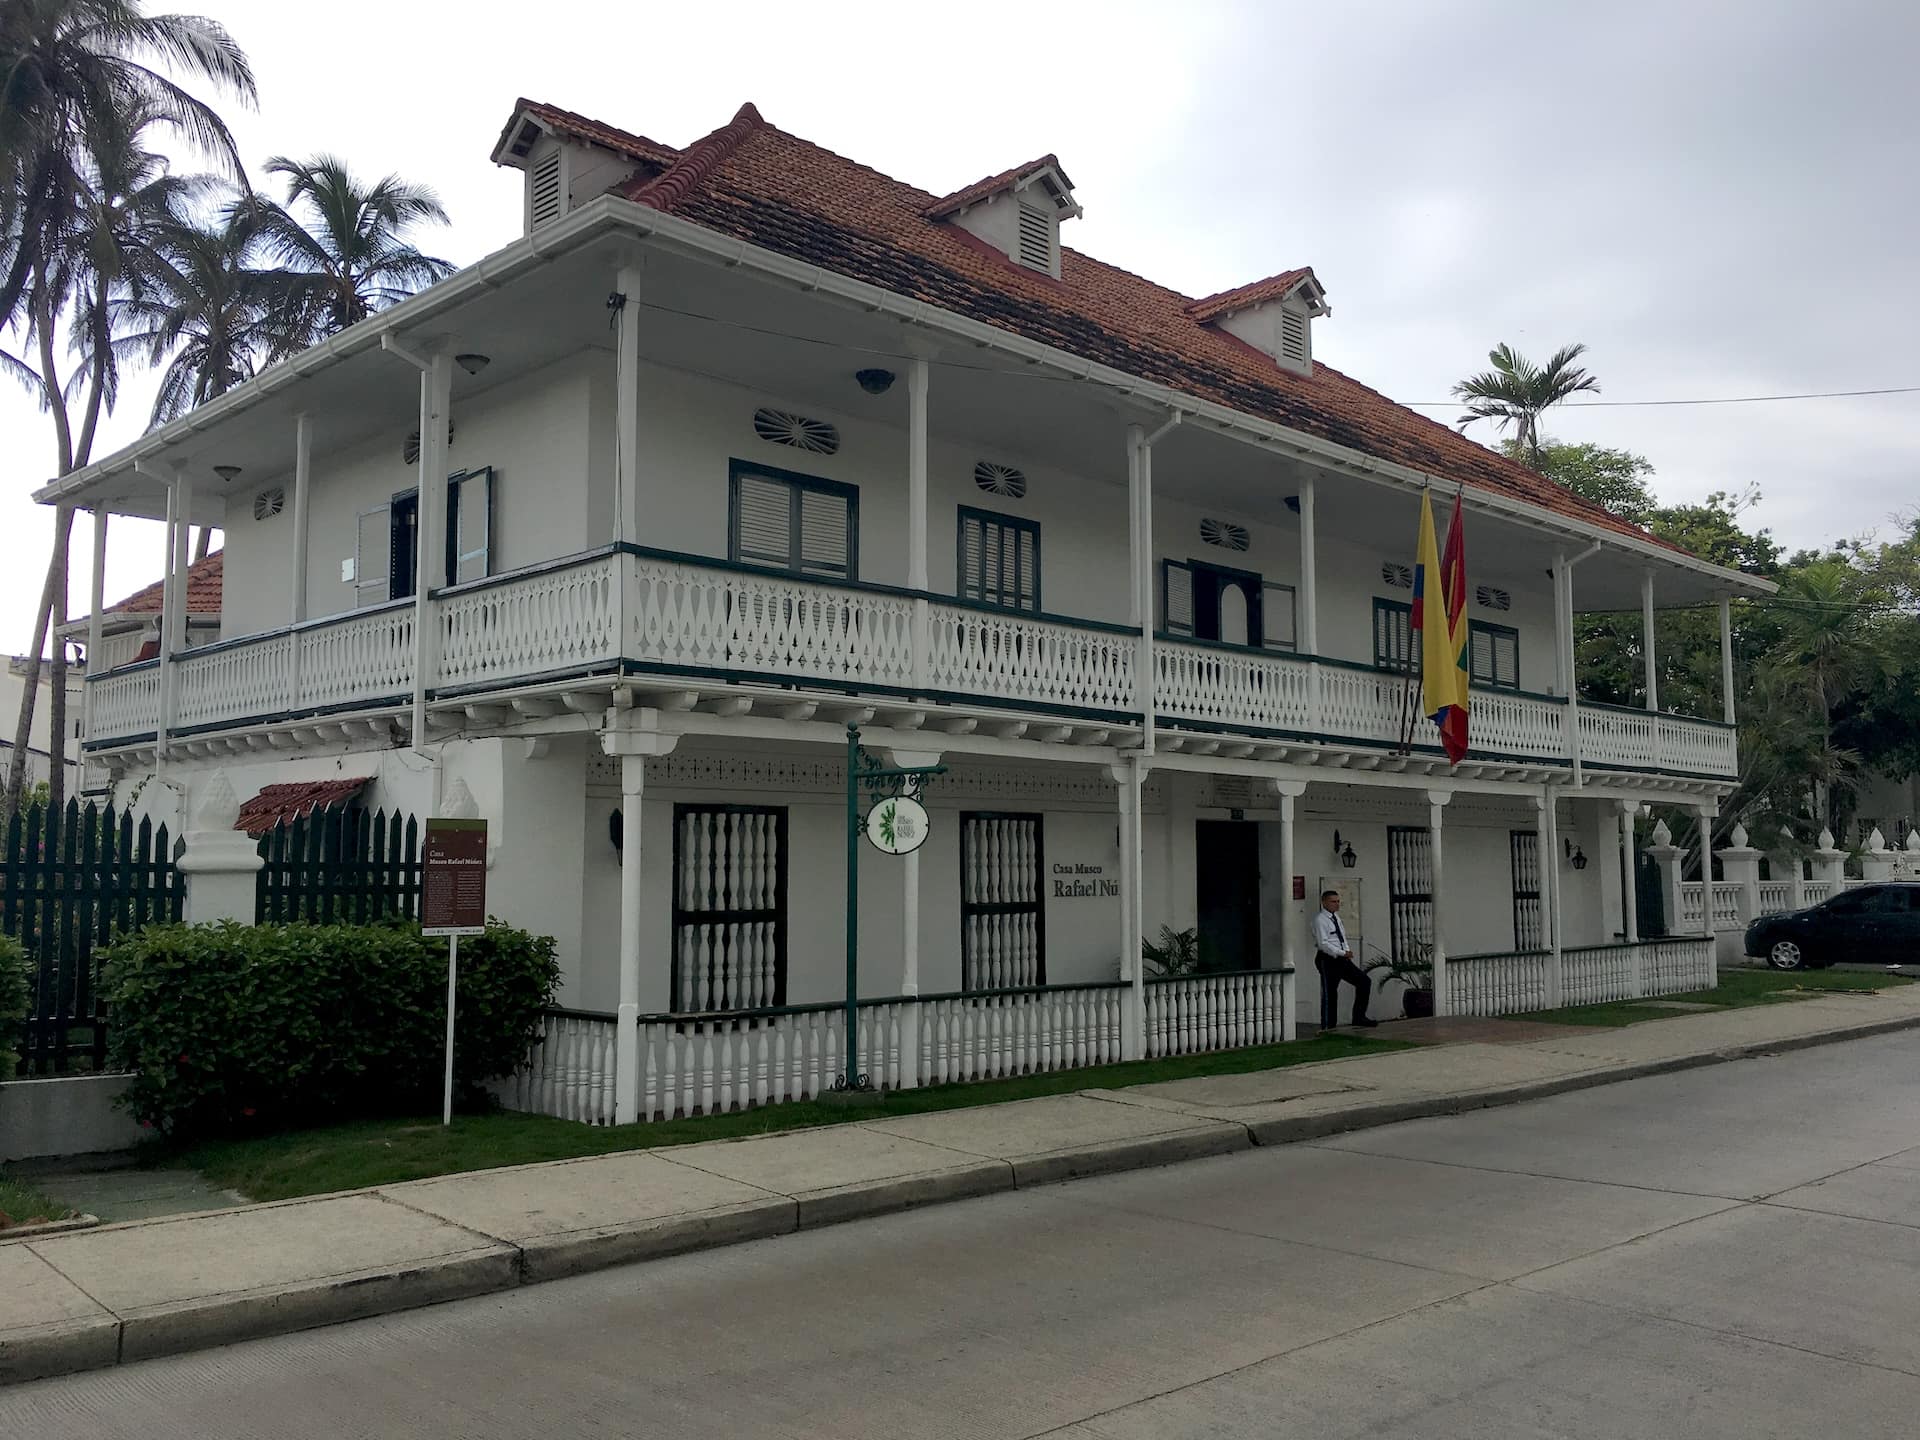 Rafael Núñez House Museum in El Cabrero, Cartagena, Colombia